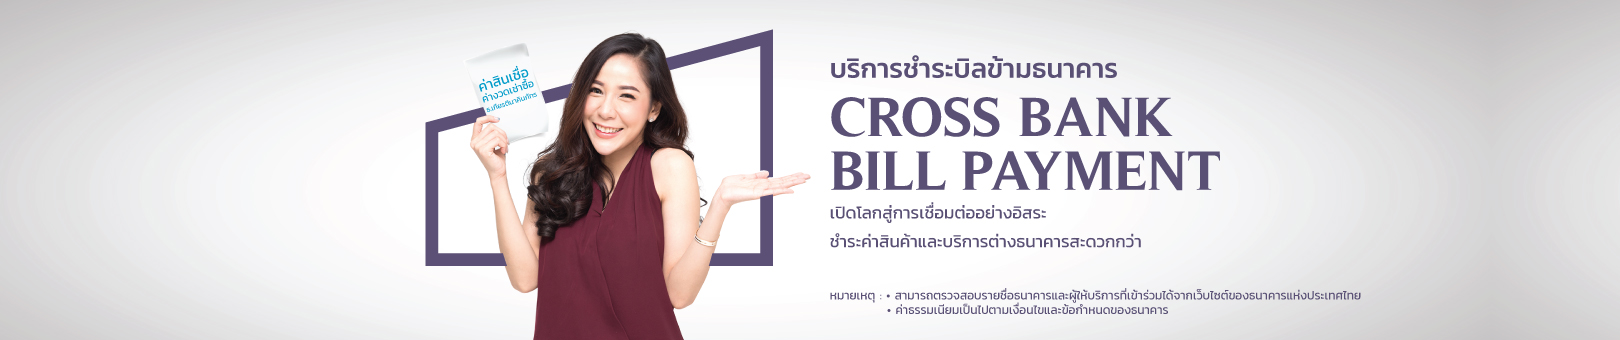 Cross-Bank-Bill-Payment_1620x340